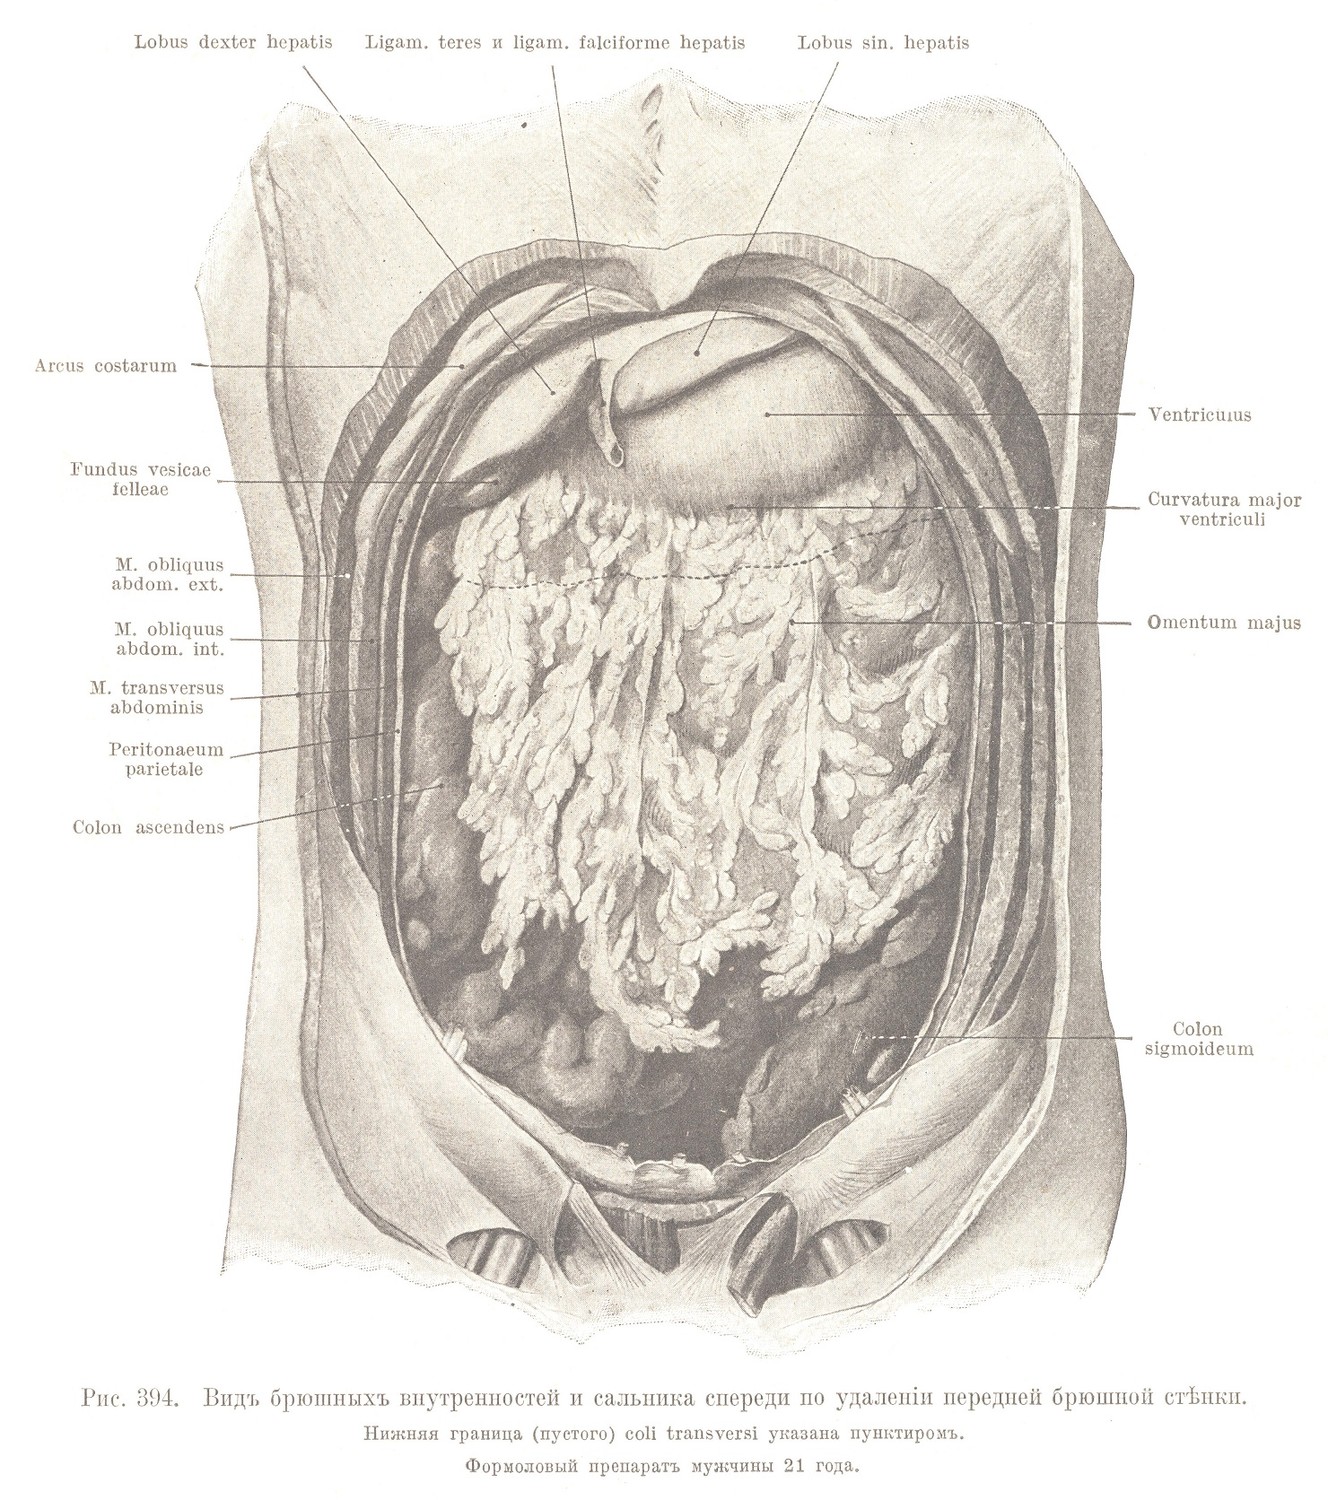 Situs viscerum abdomini